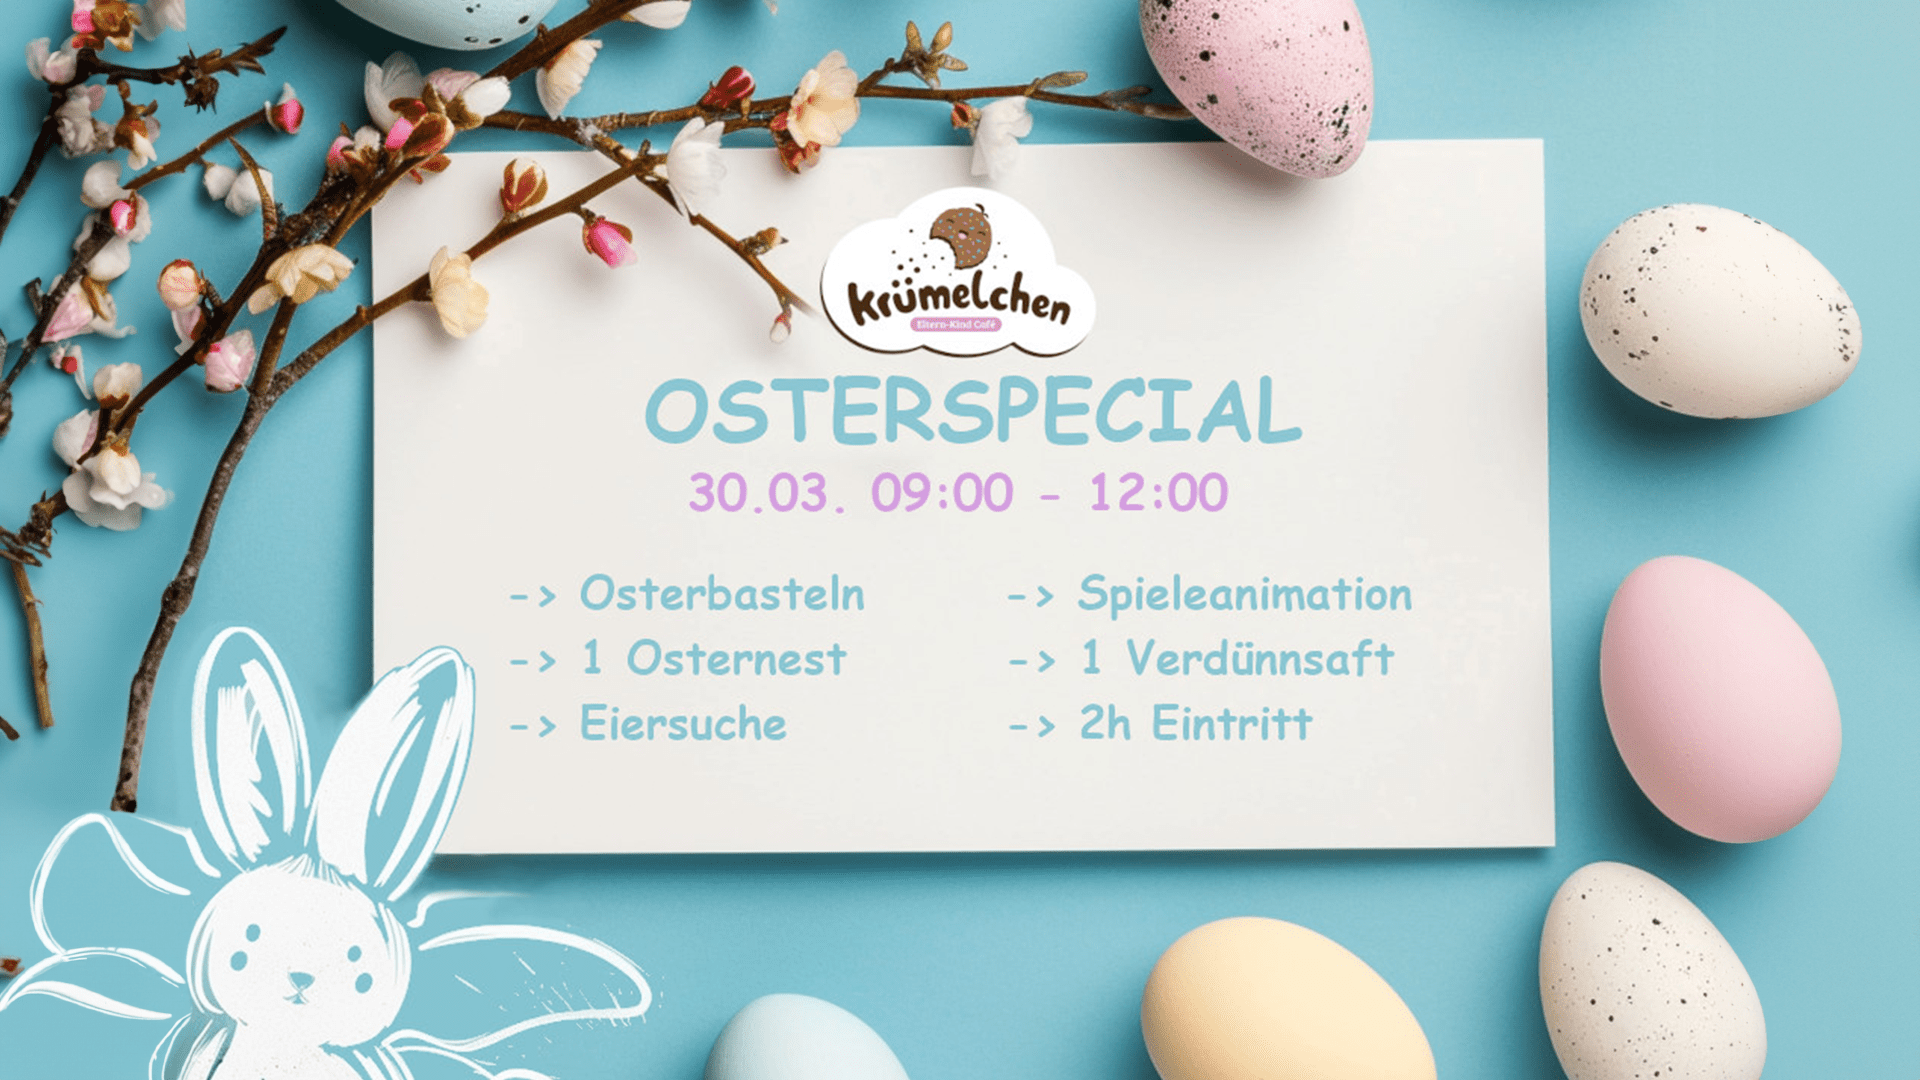 Osterspecial-Flyer - Cafe Krümelchen